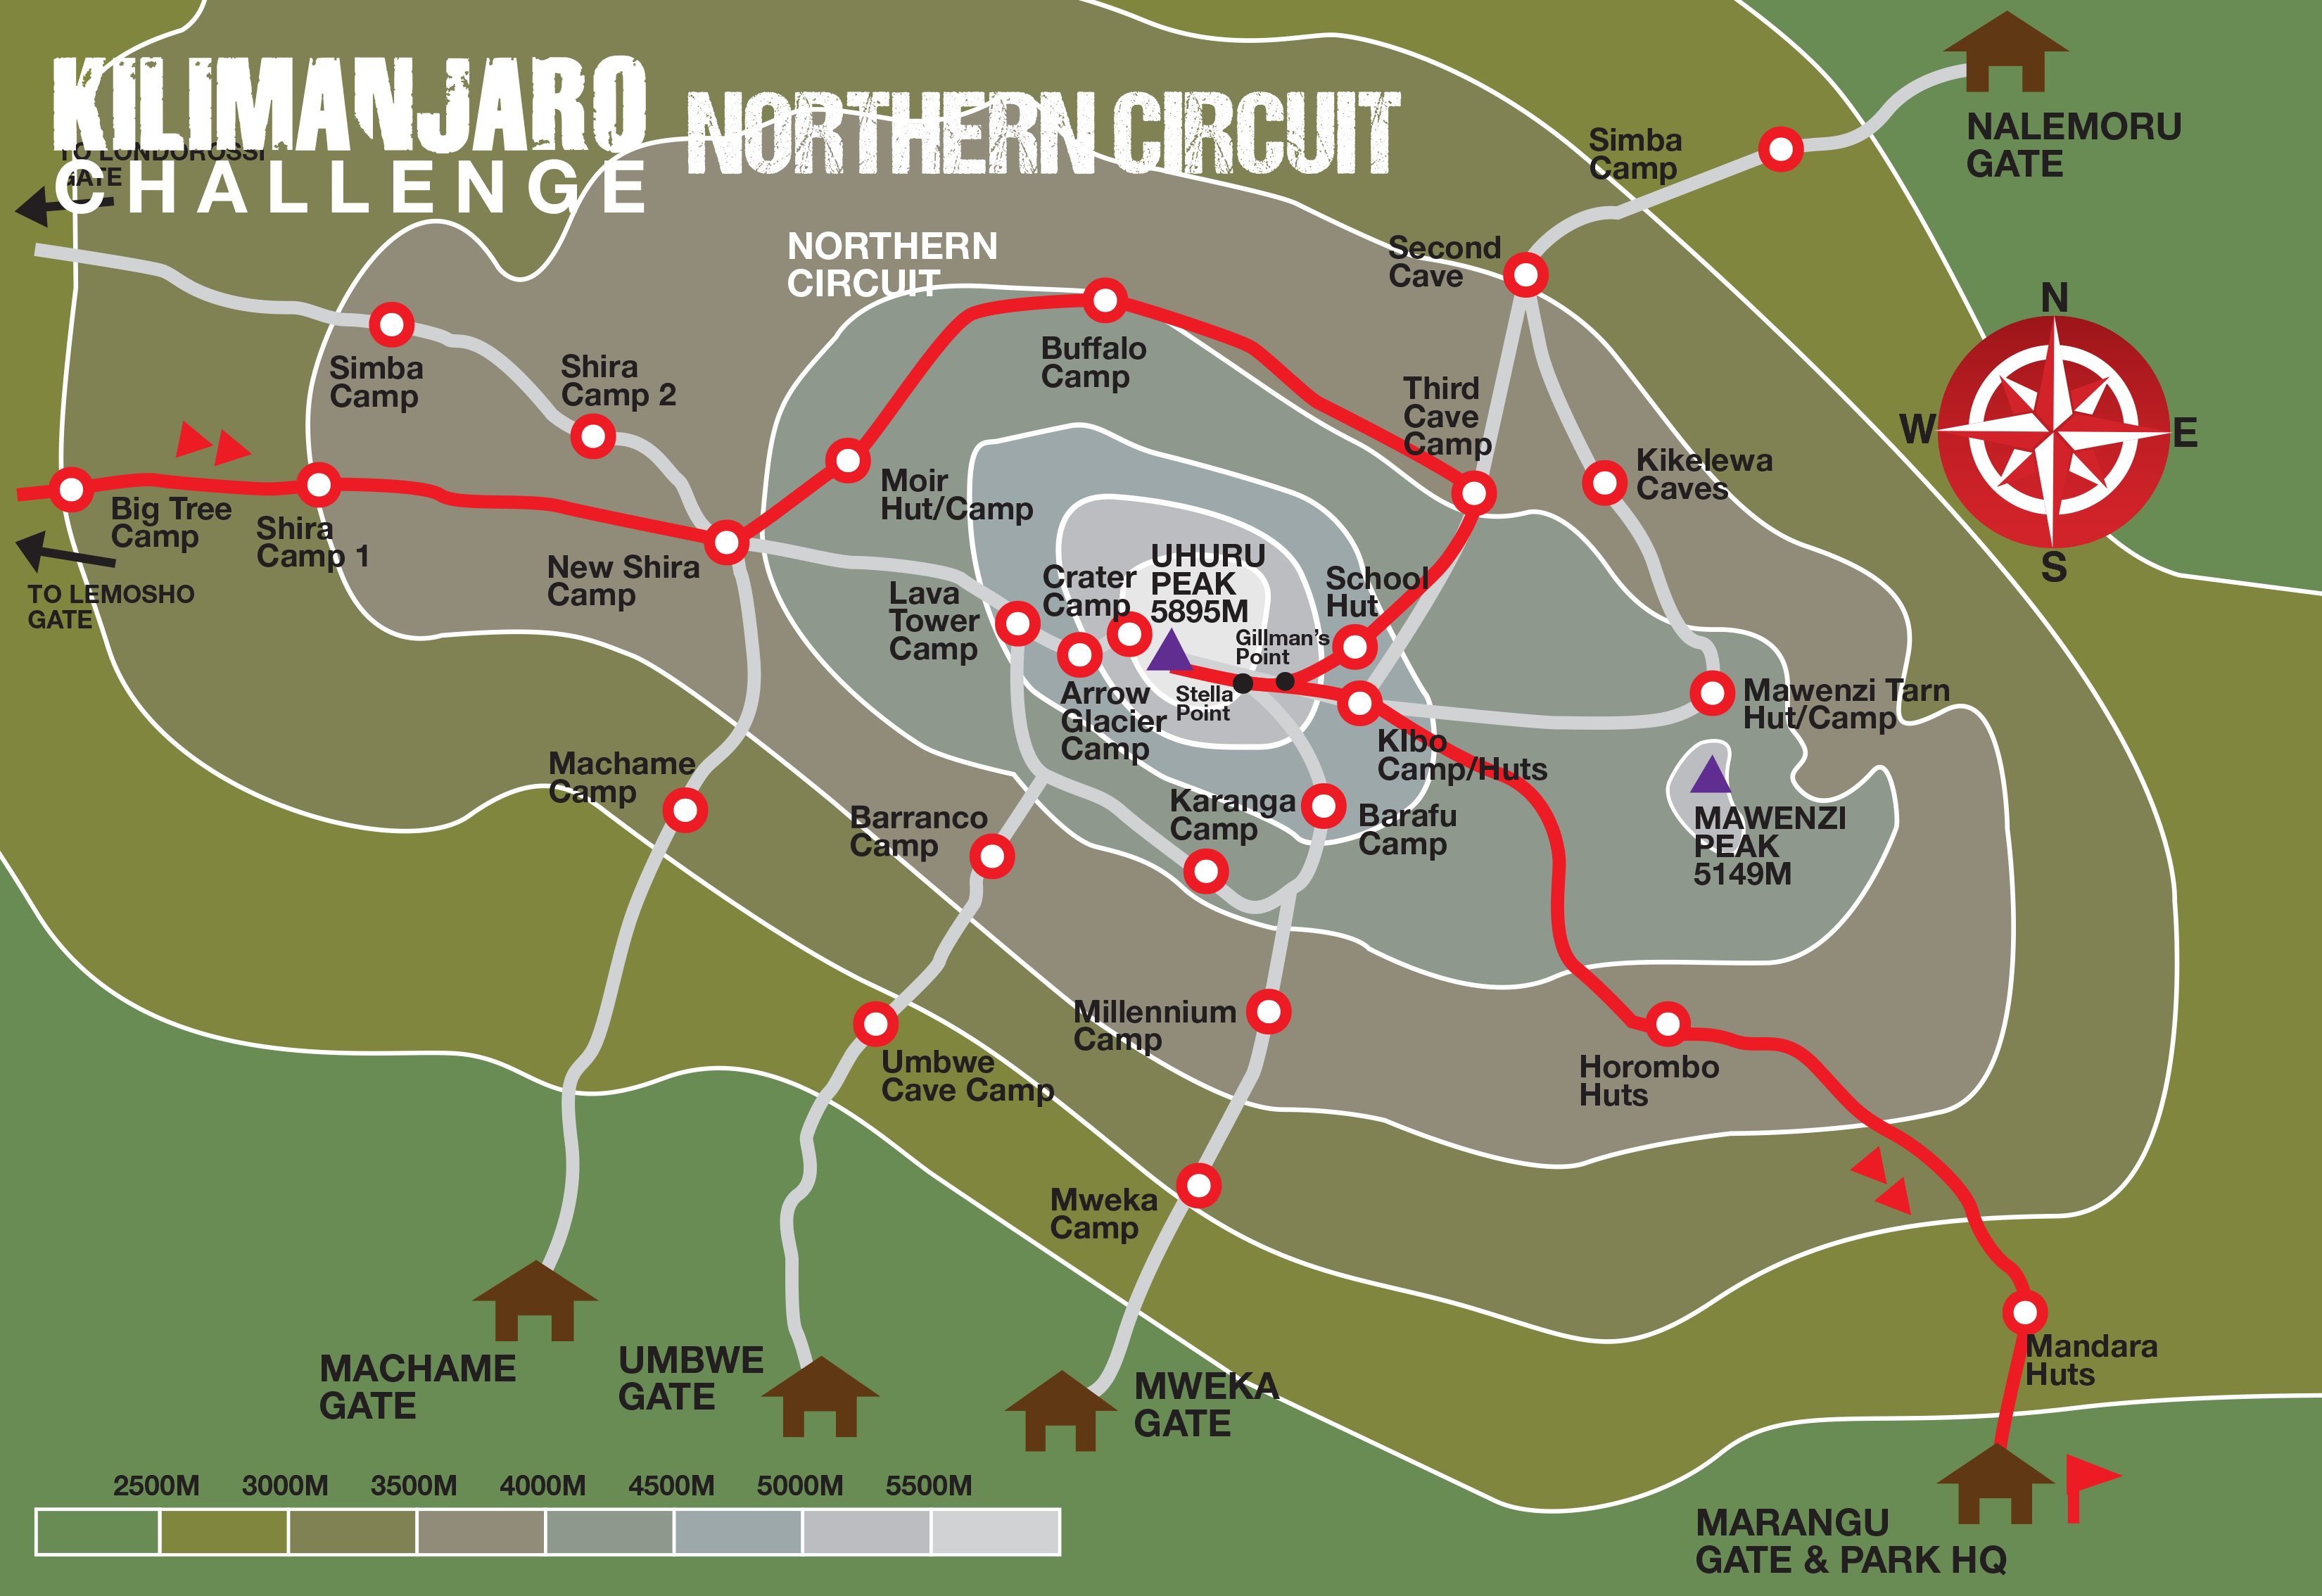 Northern Circuit Map Kilimanjaro